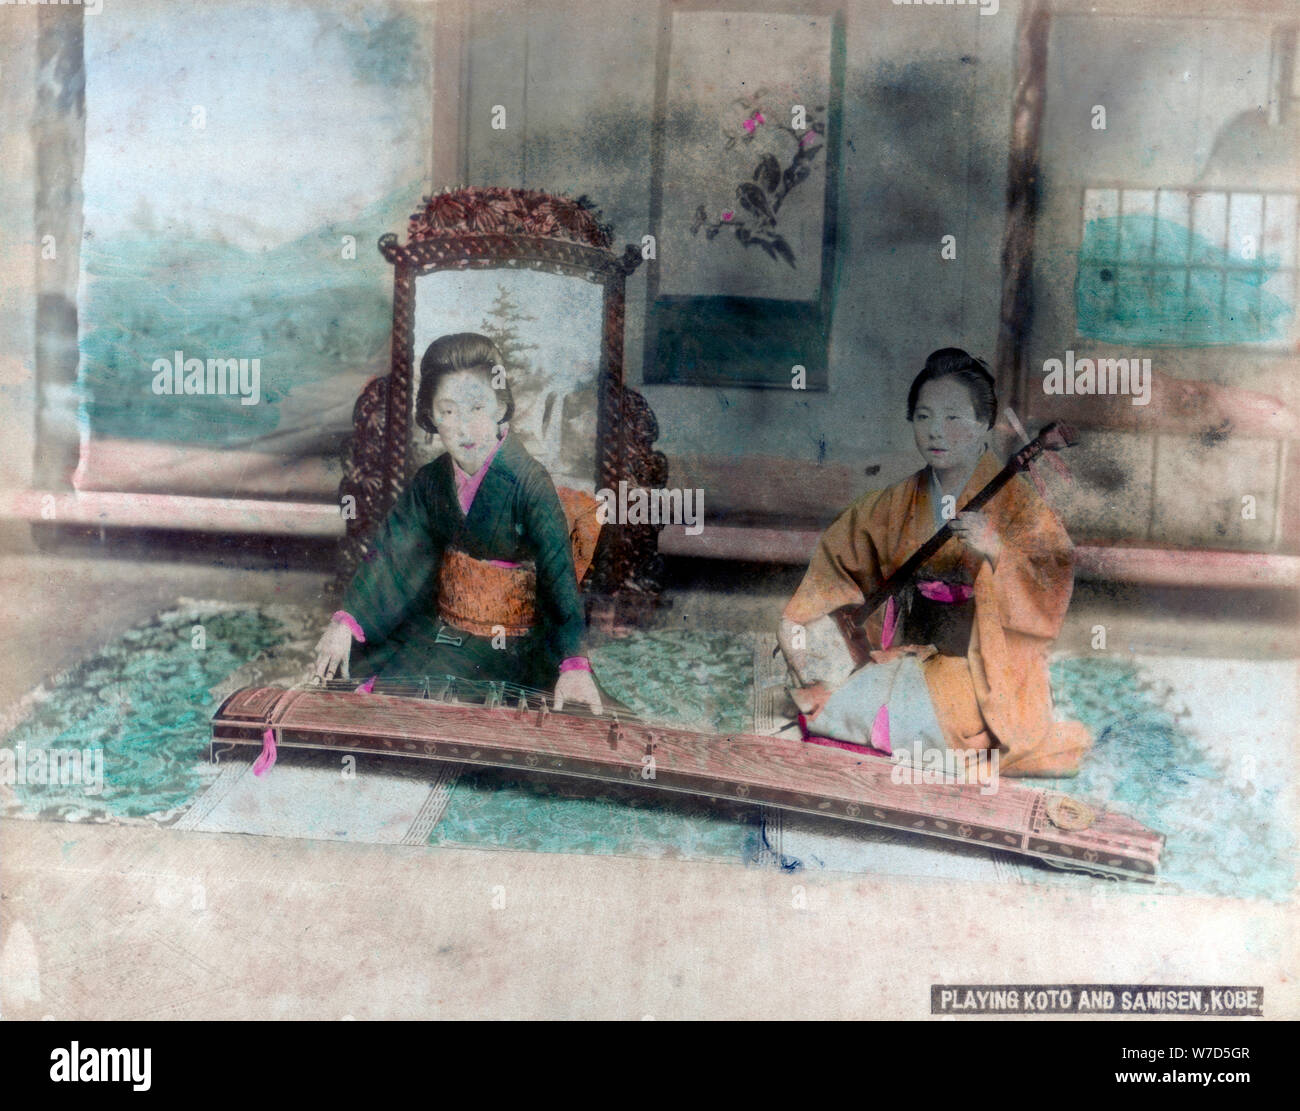 La musique japonaise : femmes jouant Koto et Samisen, Kobe, Japon. Artiste : Inconnu Banque D'Images